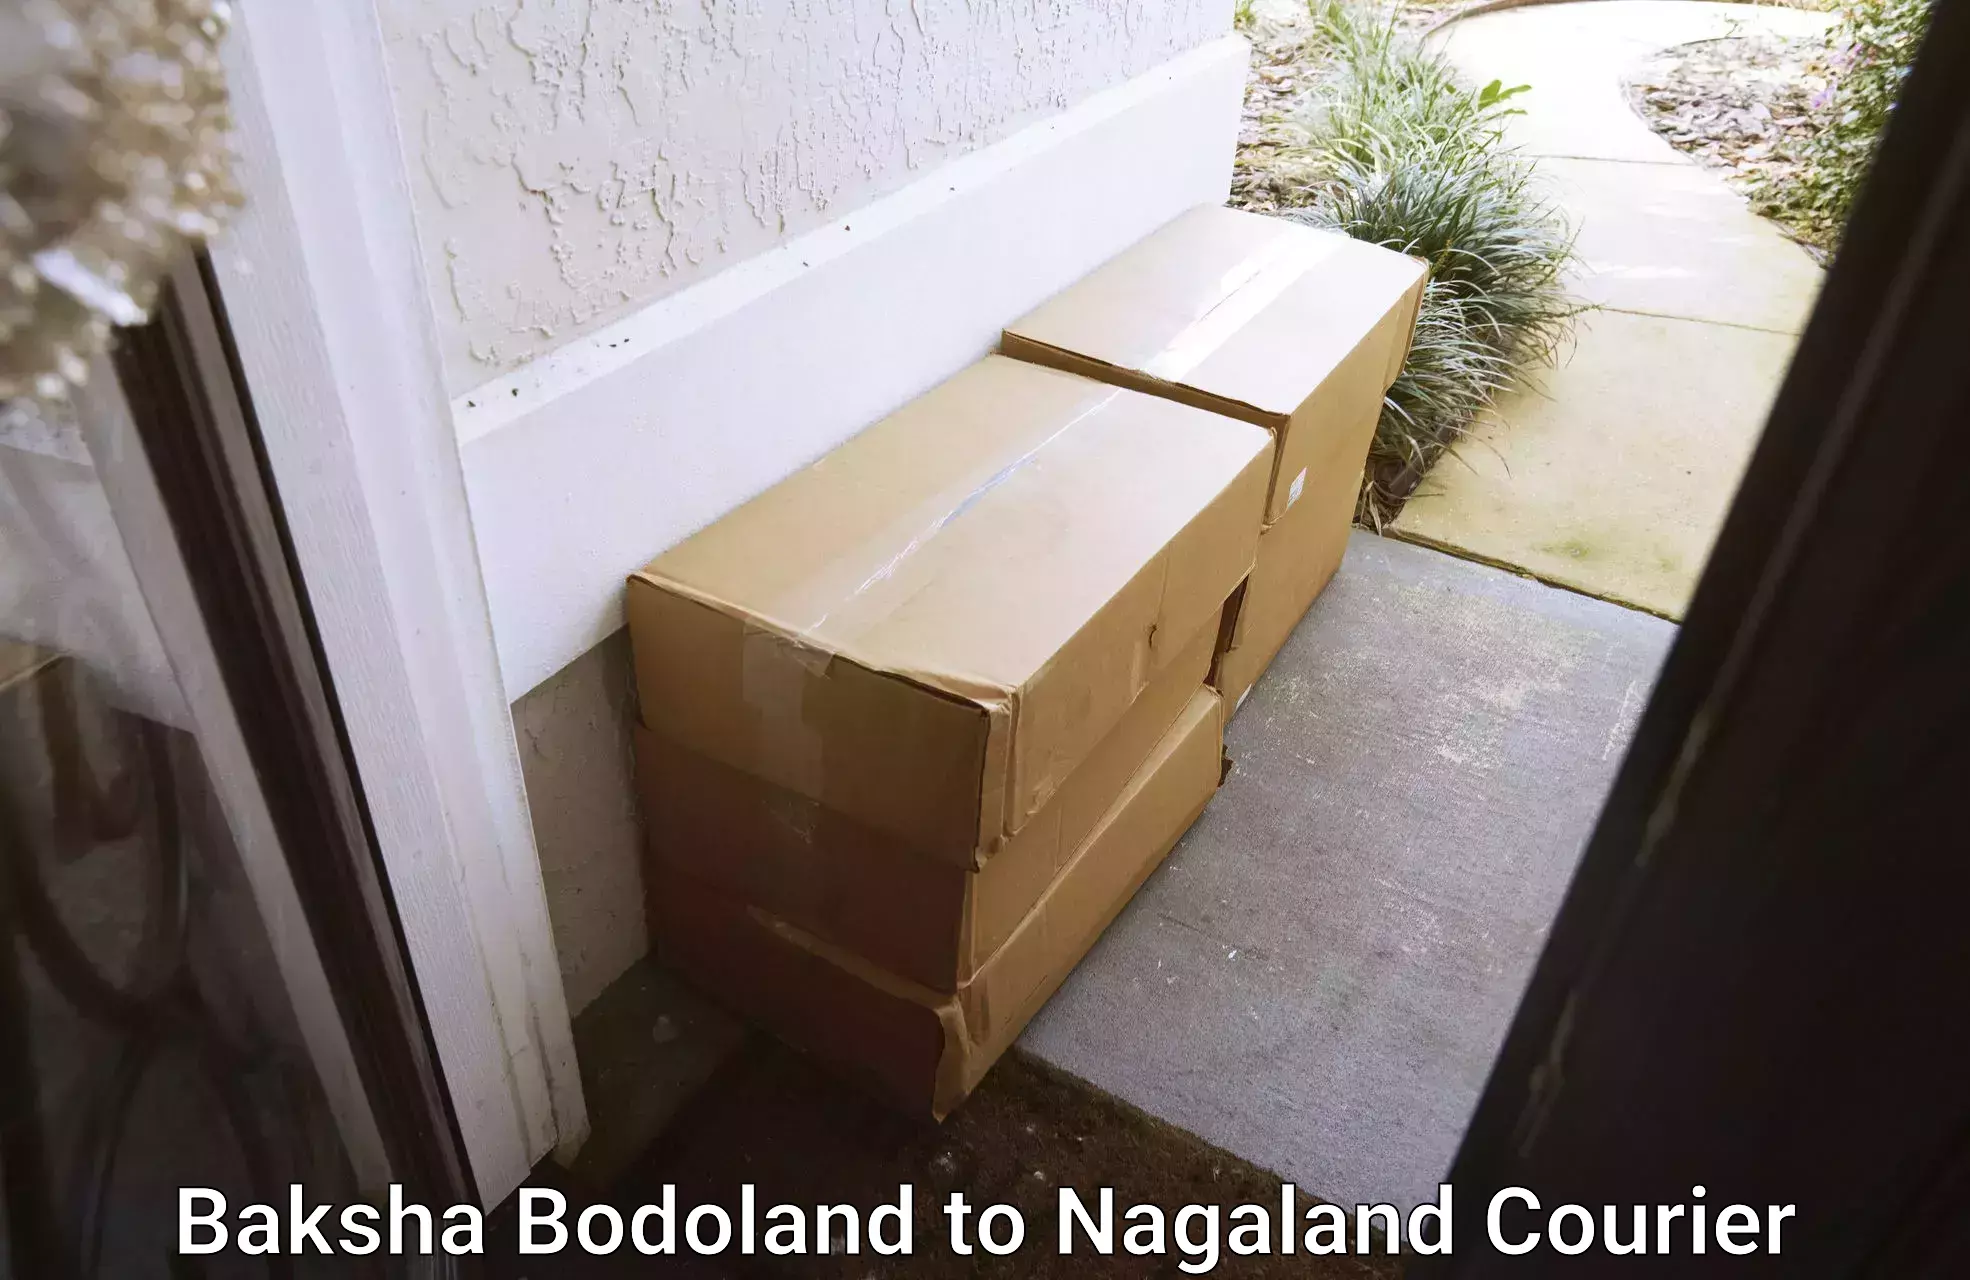 Large-scale shipping solutions Baksha Bodoland to NIT Nagaland